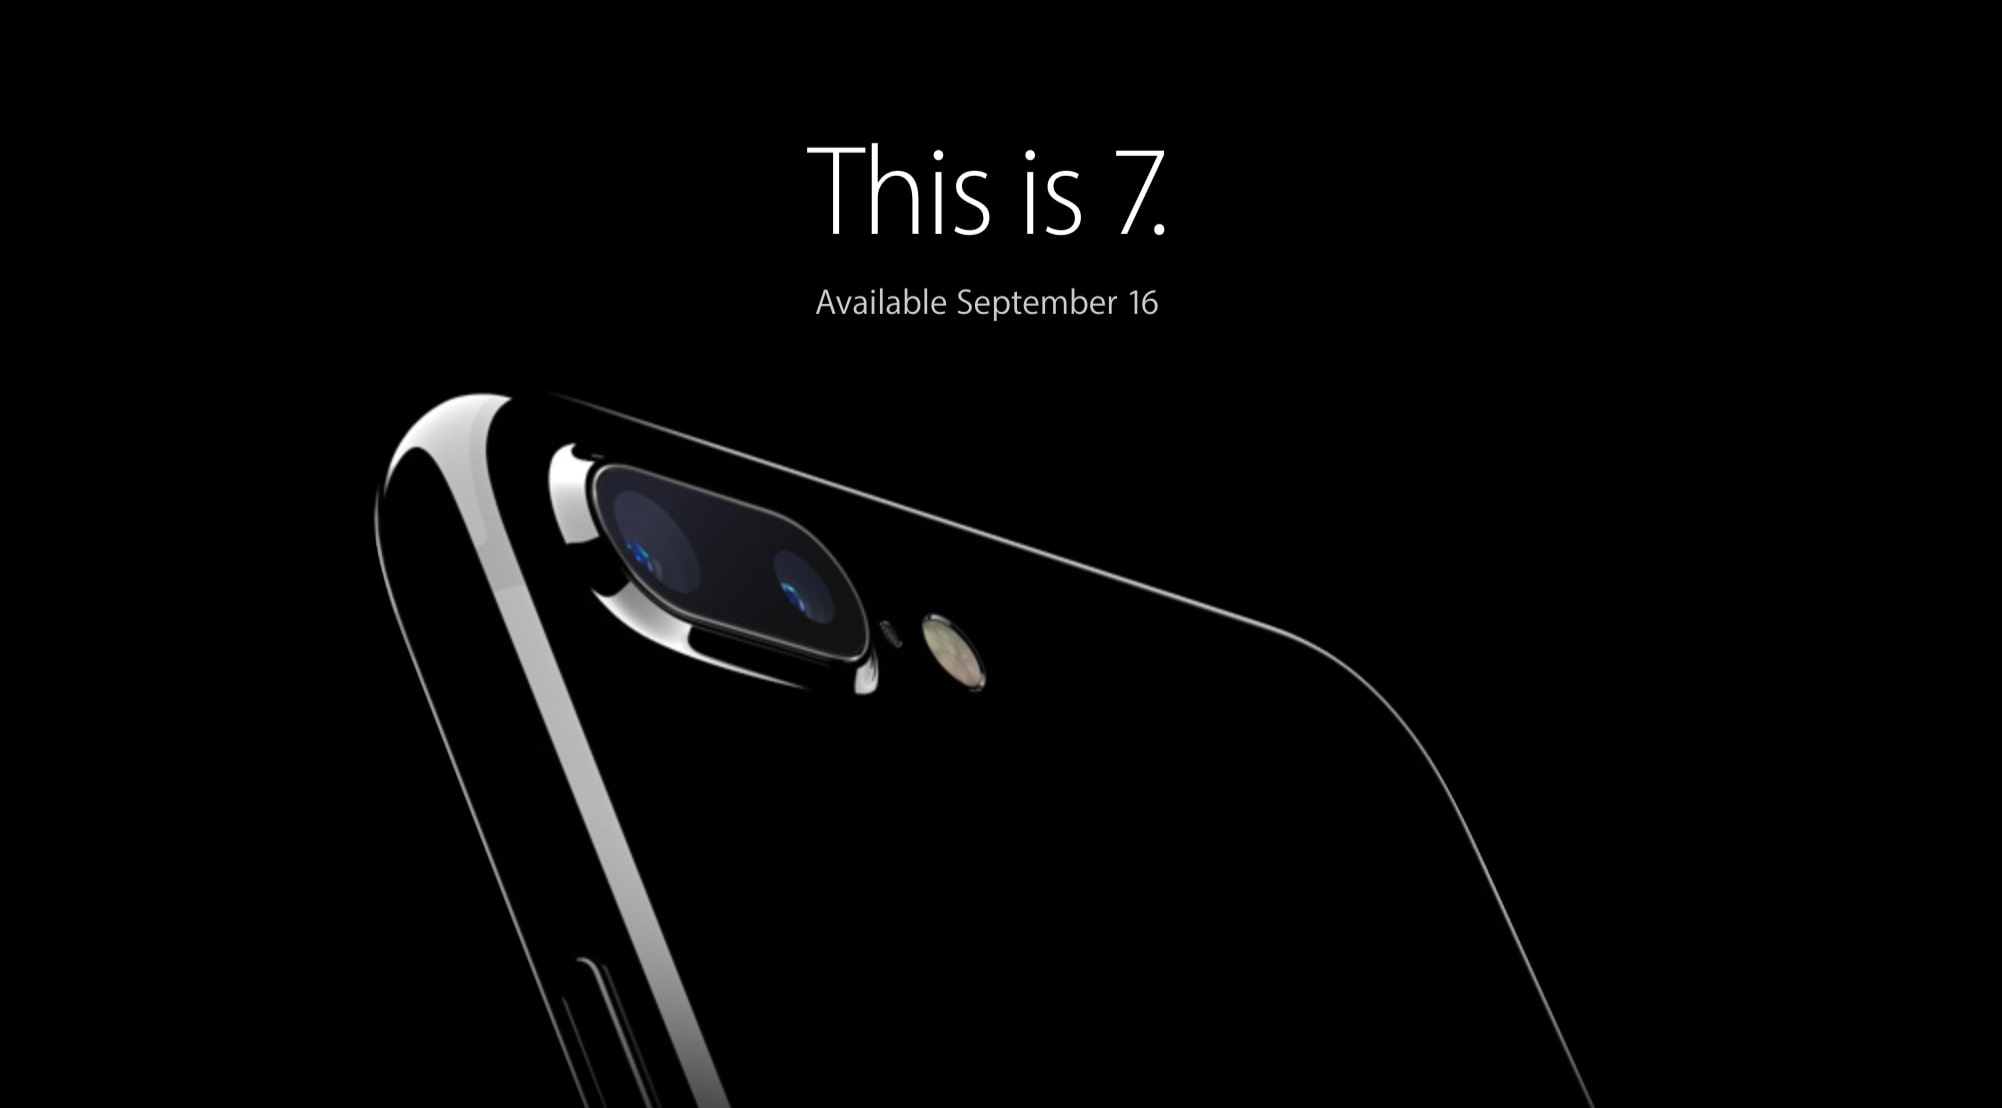 iPhone 7 New Slogan